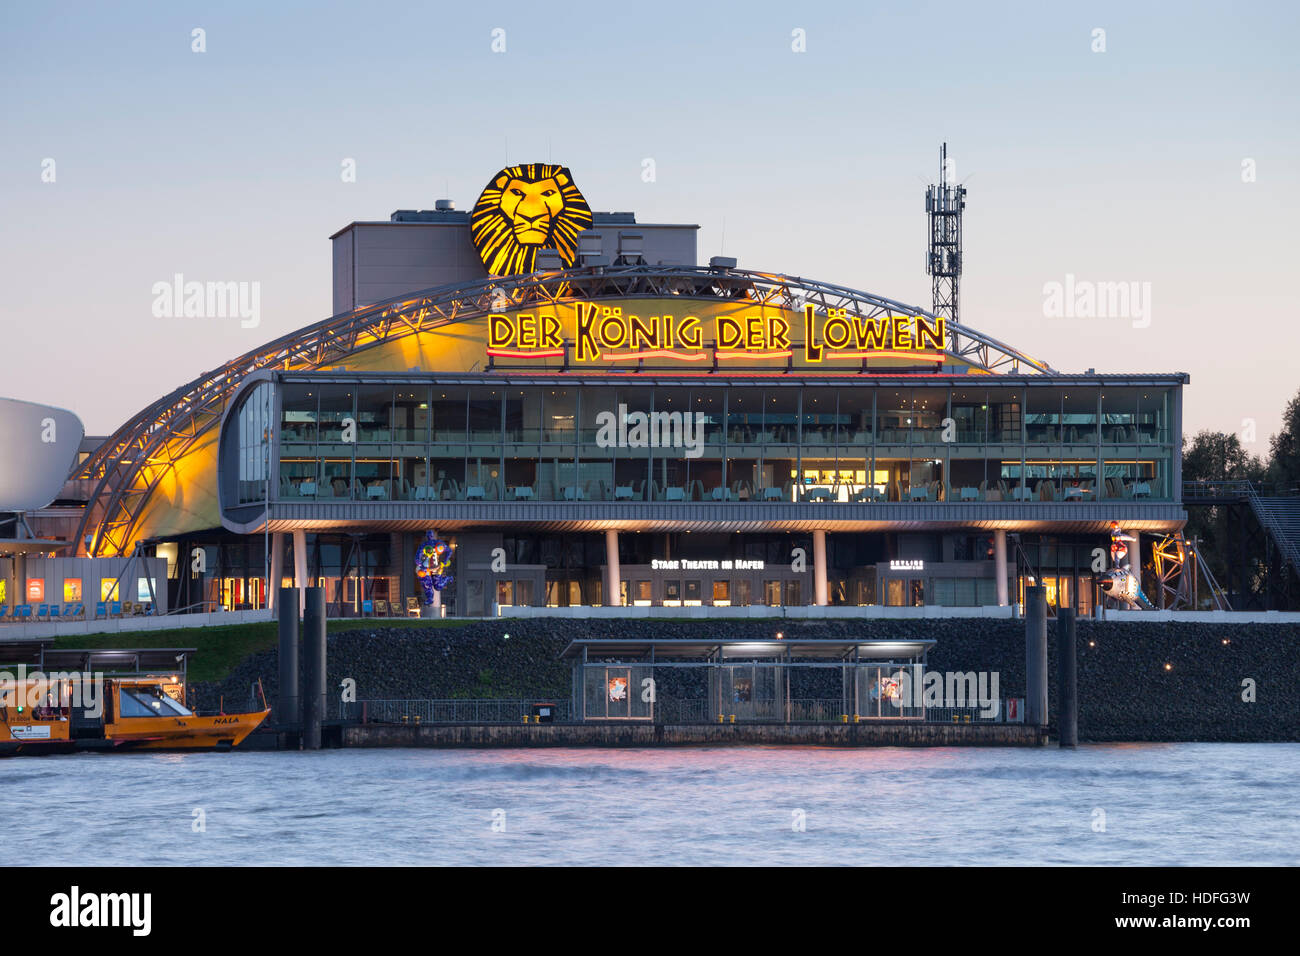 Stage Theatre par Elbe, le théâtre musical, Le Roi Lion, performance harbour, Hambourg, Allemagne Banque D'Images